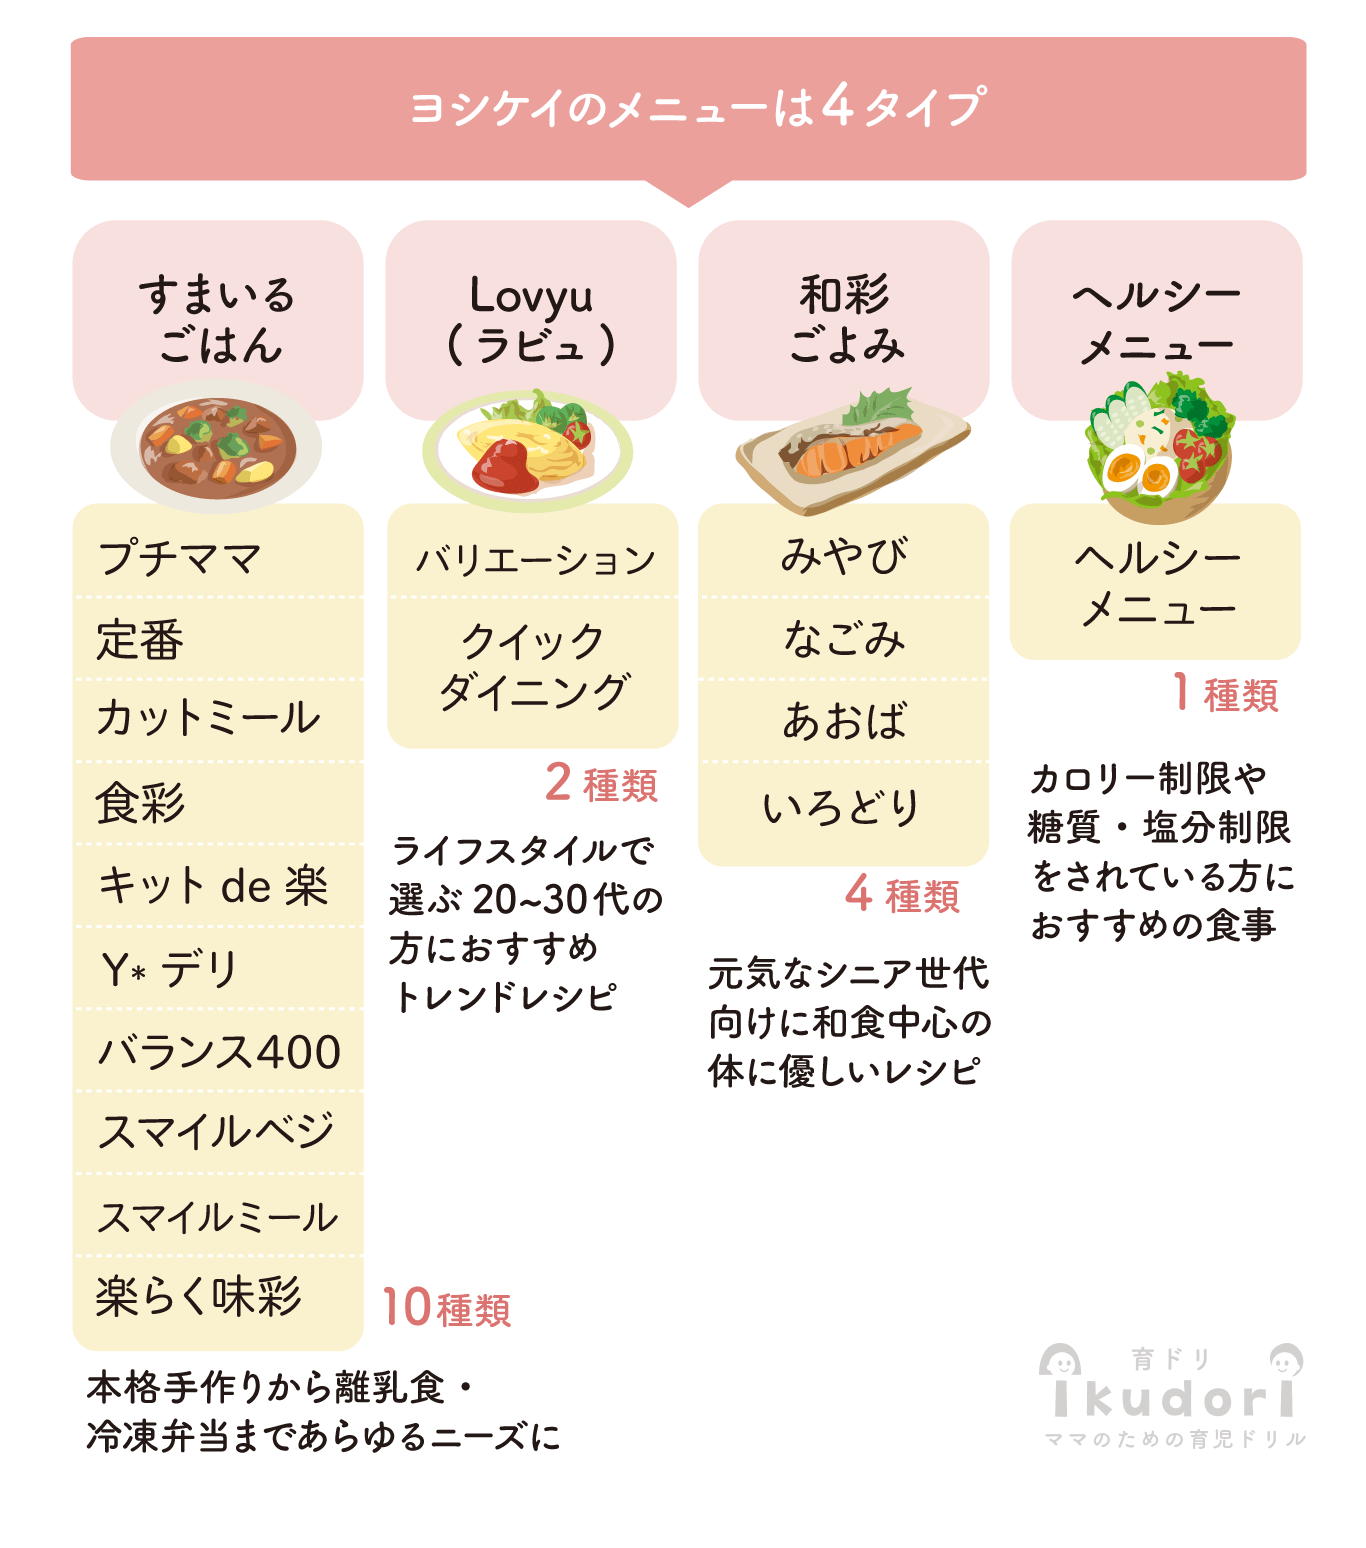 ヨシケイの4タイプのメニュー表